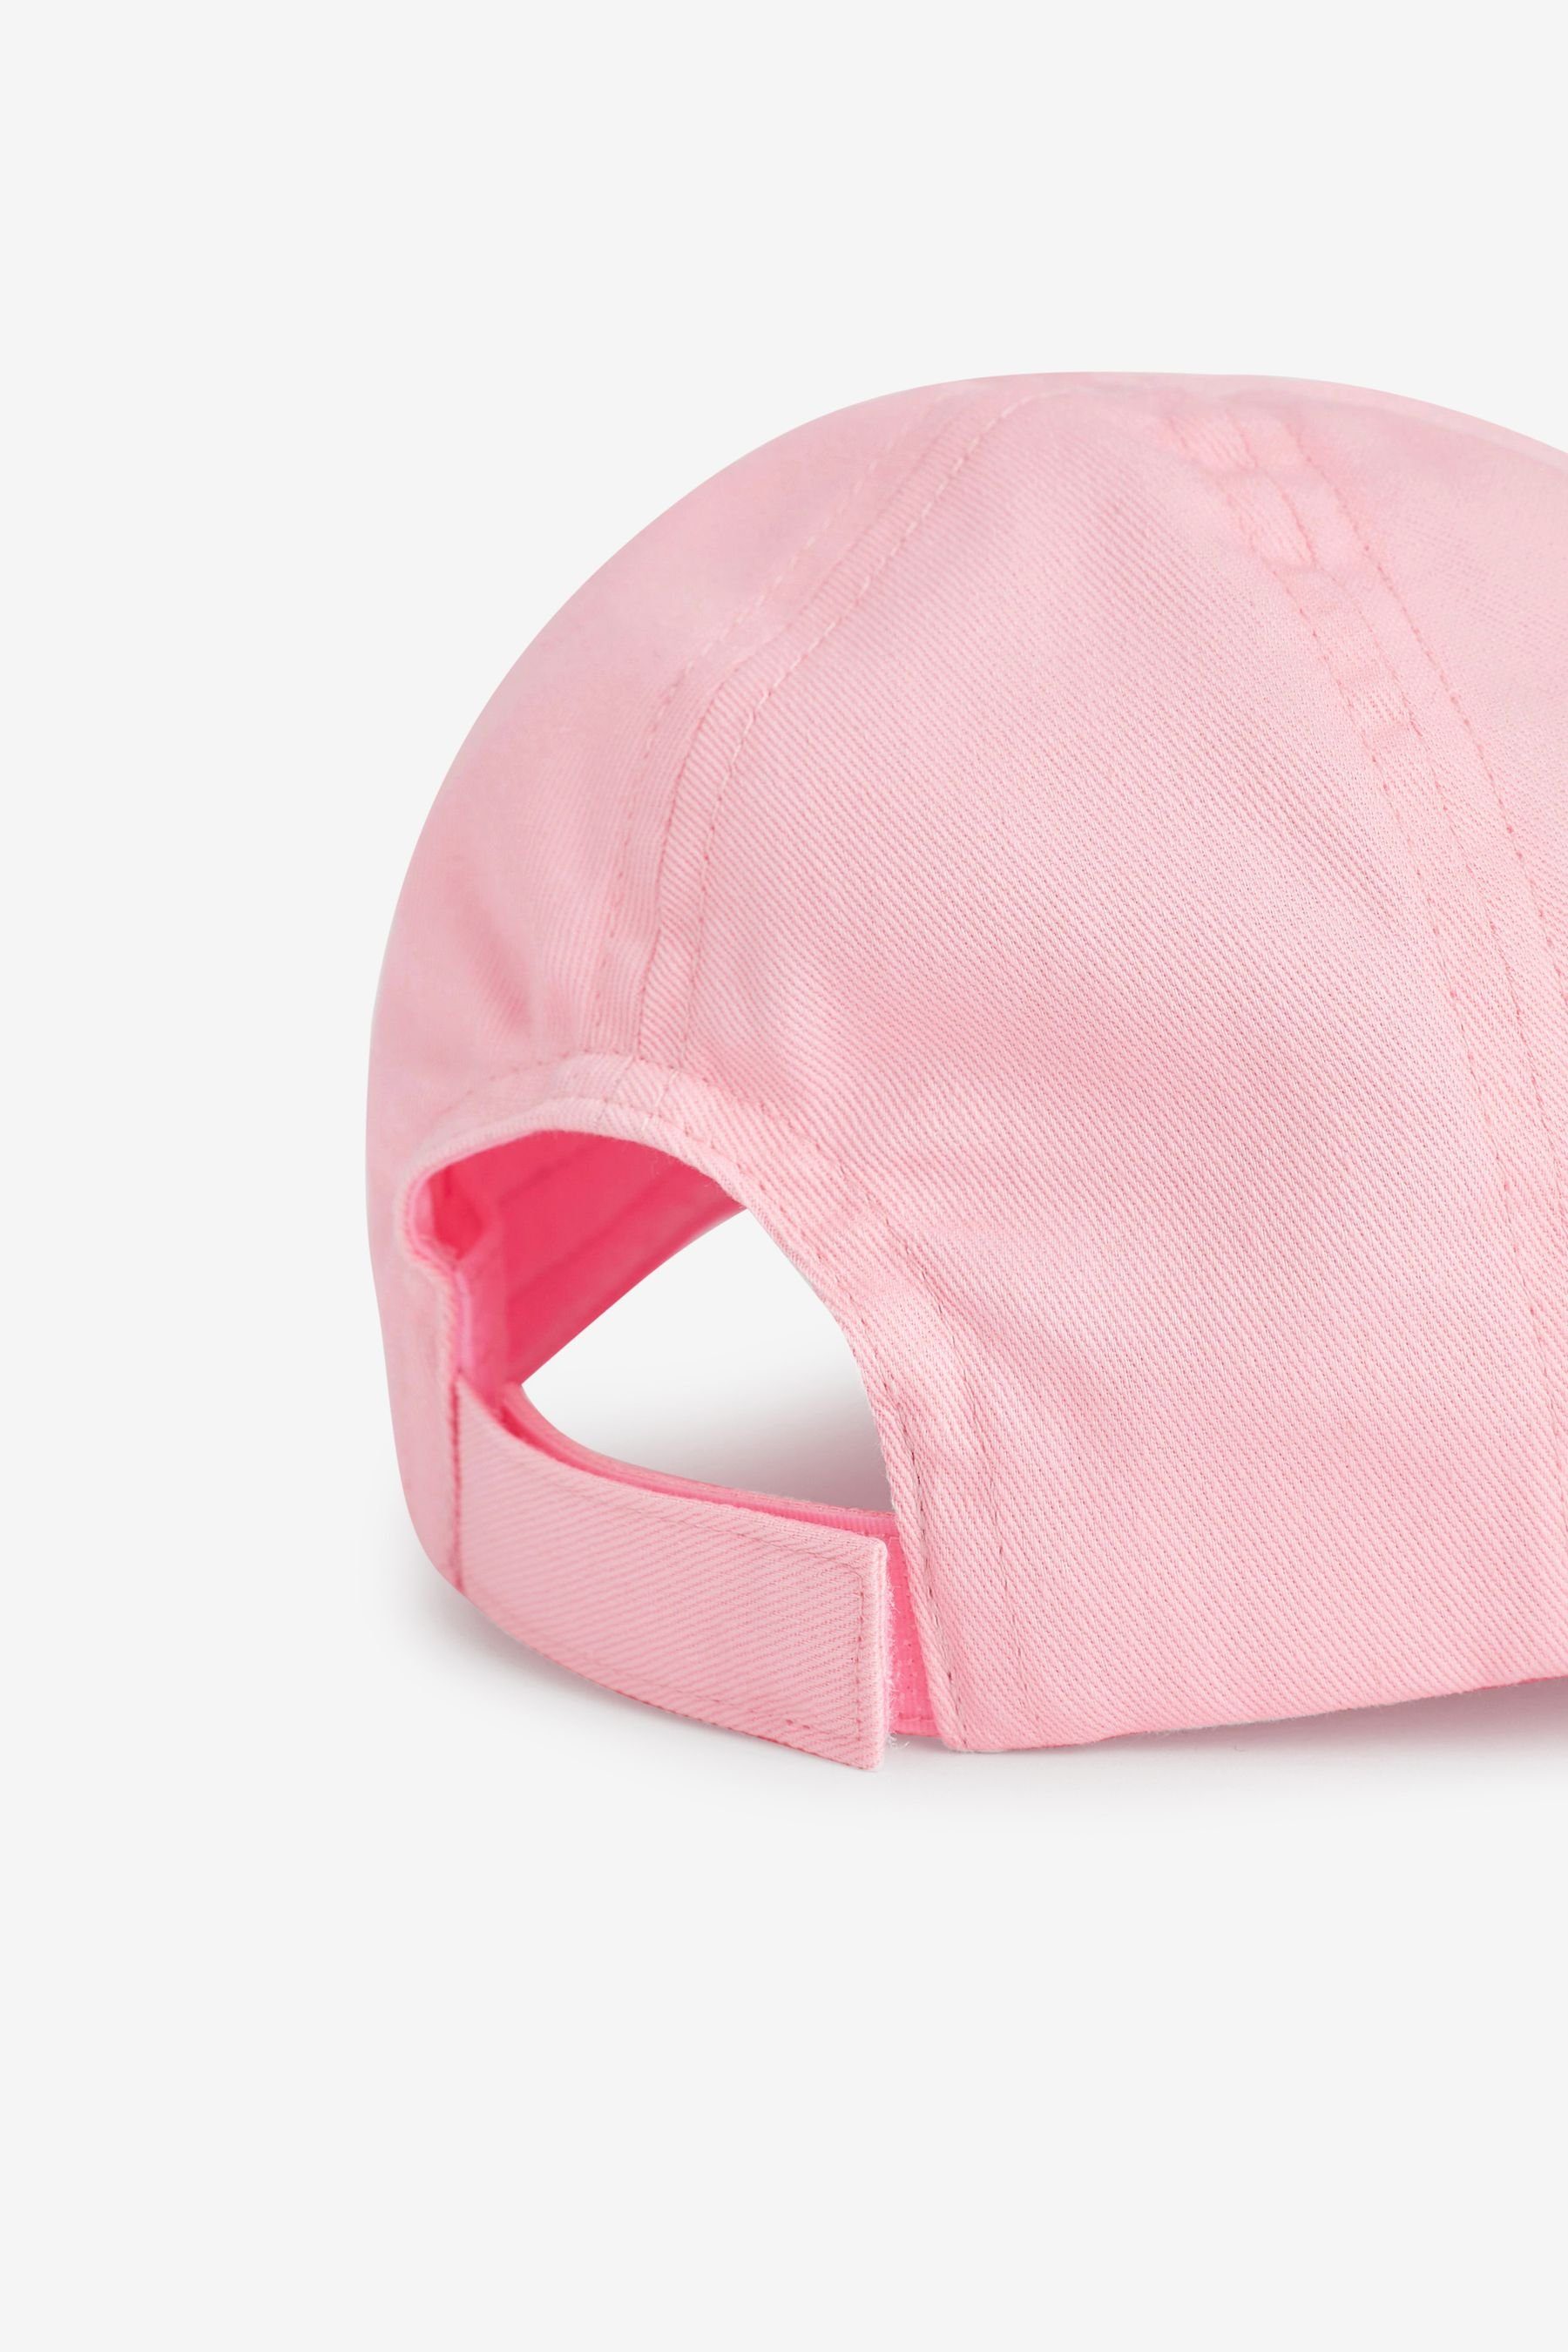 Strawberry (1-St) Cap Besticktes Next Baseball Pink Cap Crochet